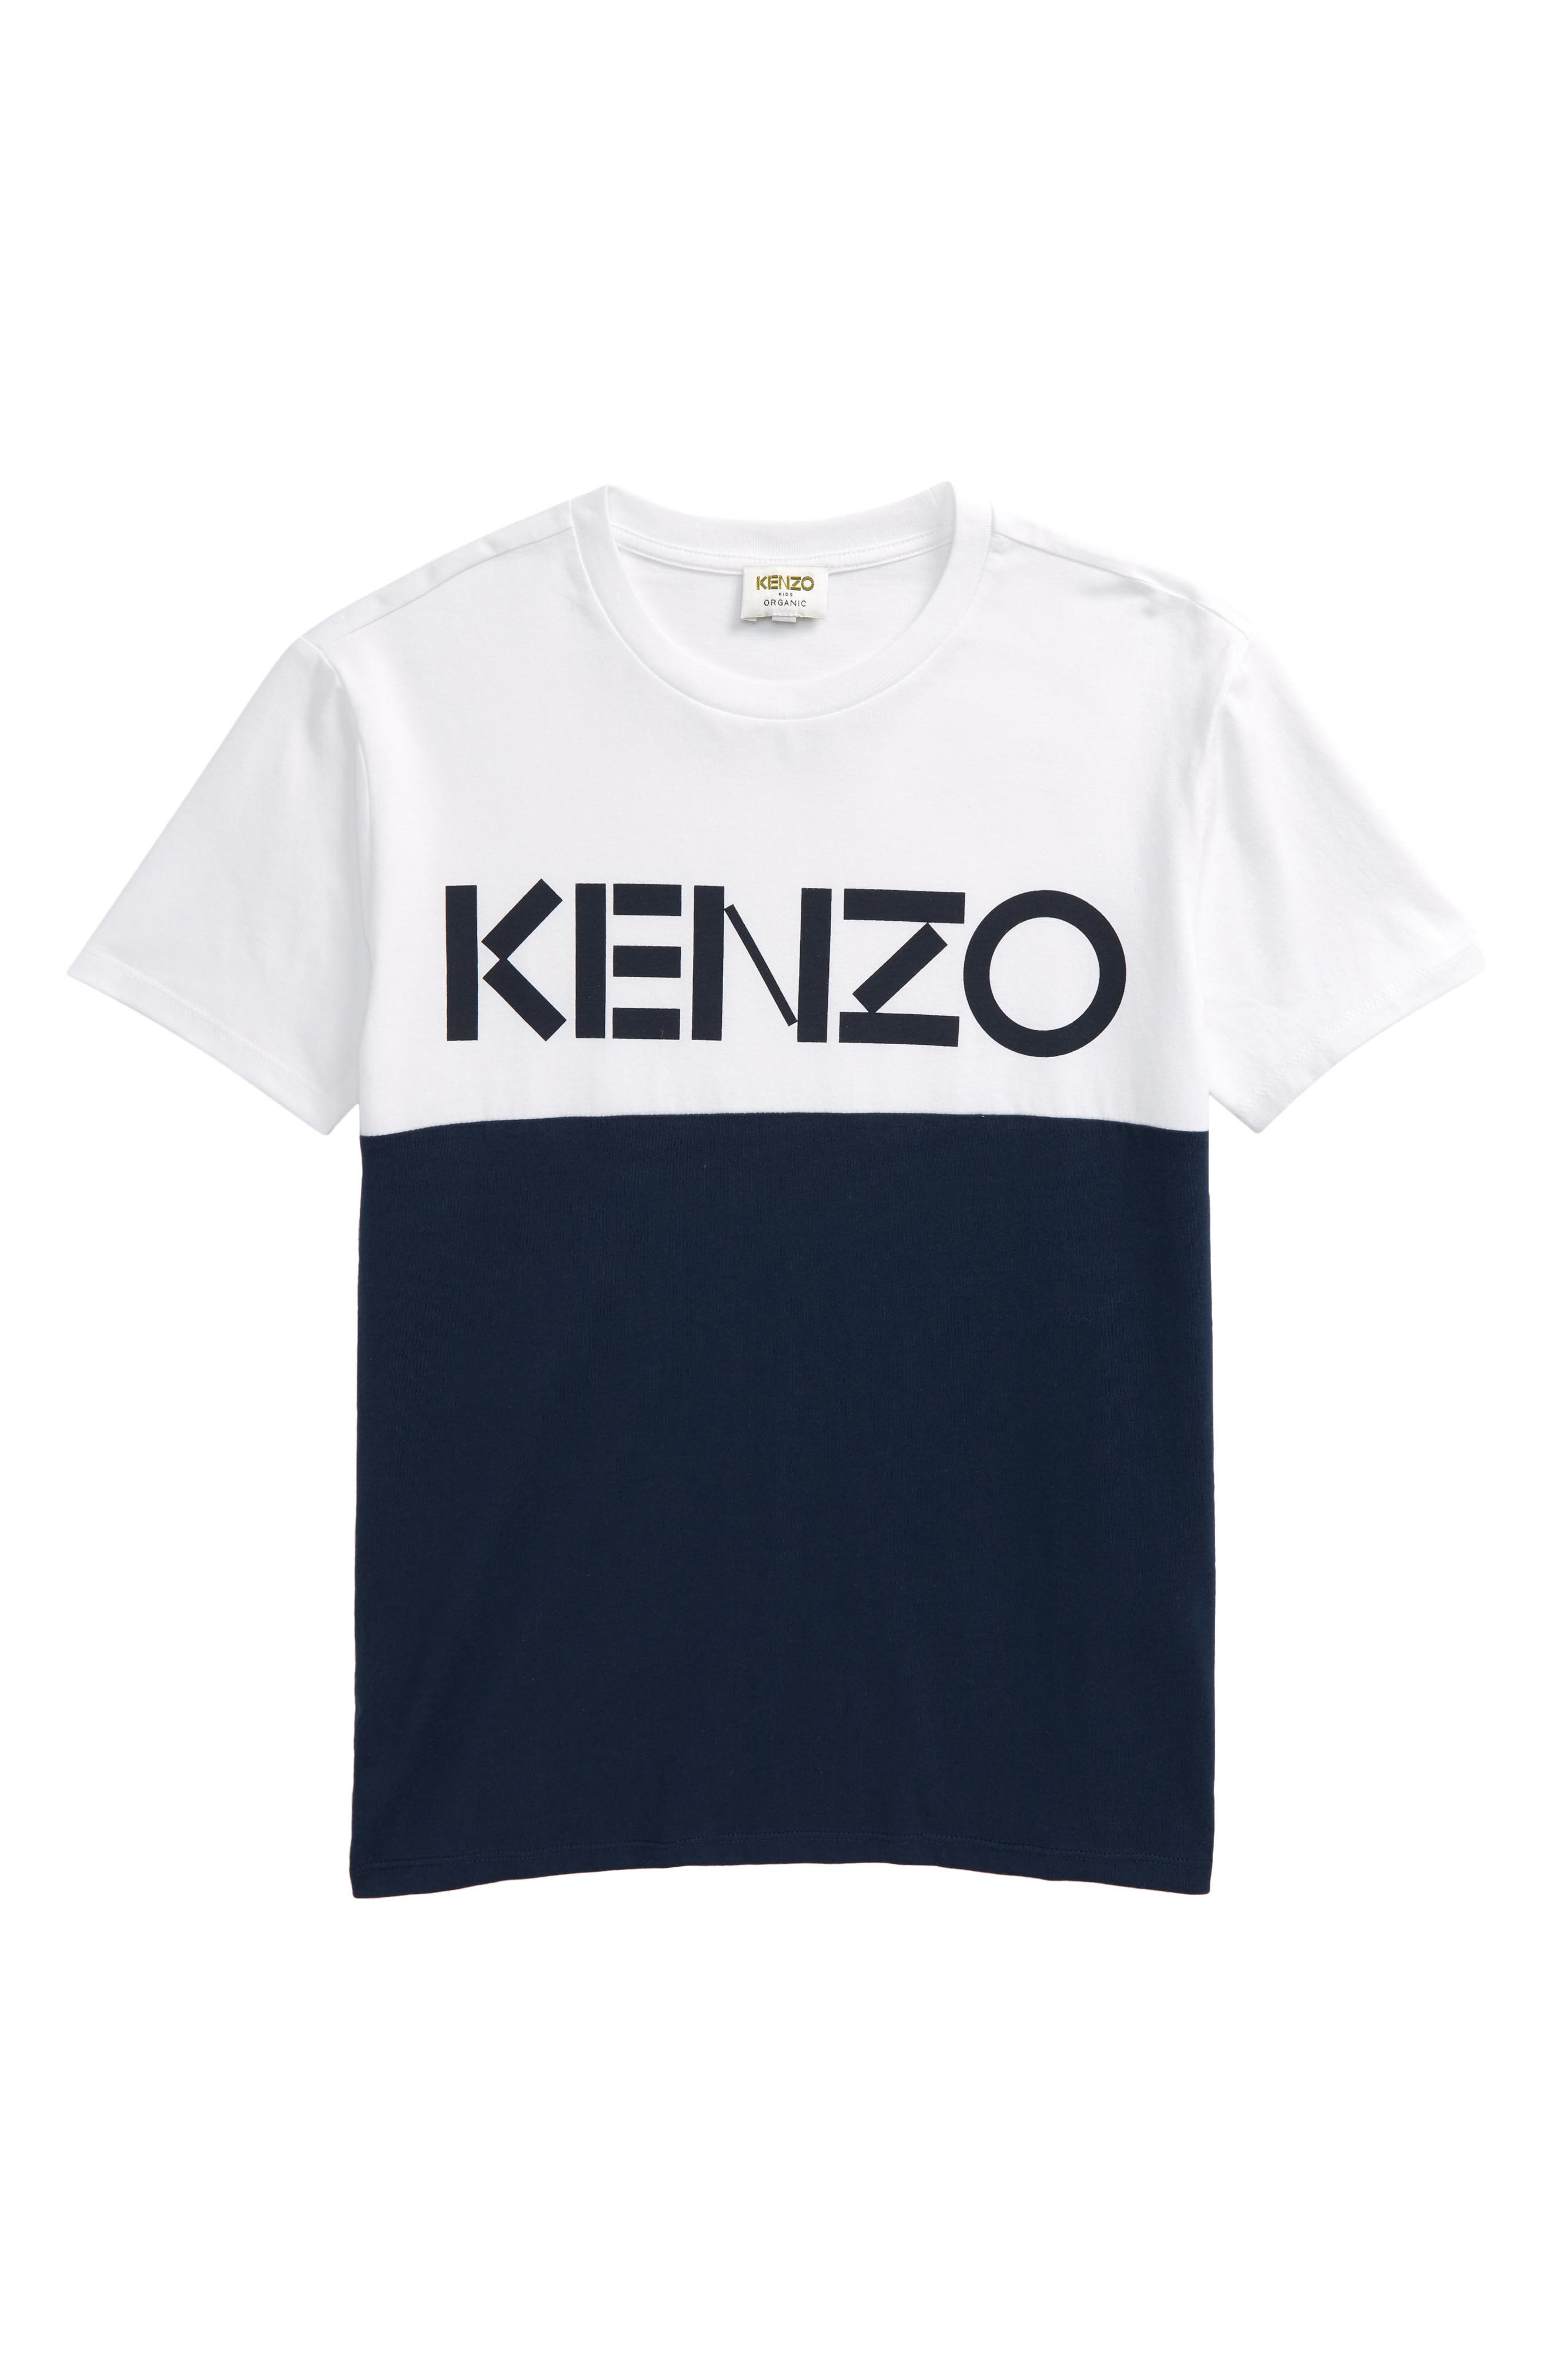 kenzo logo tee